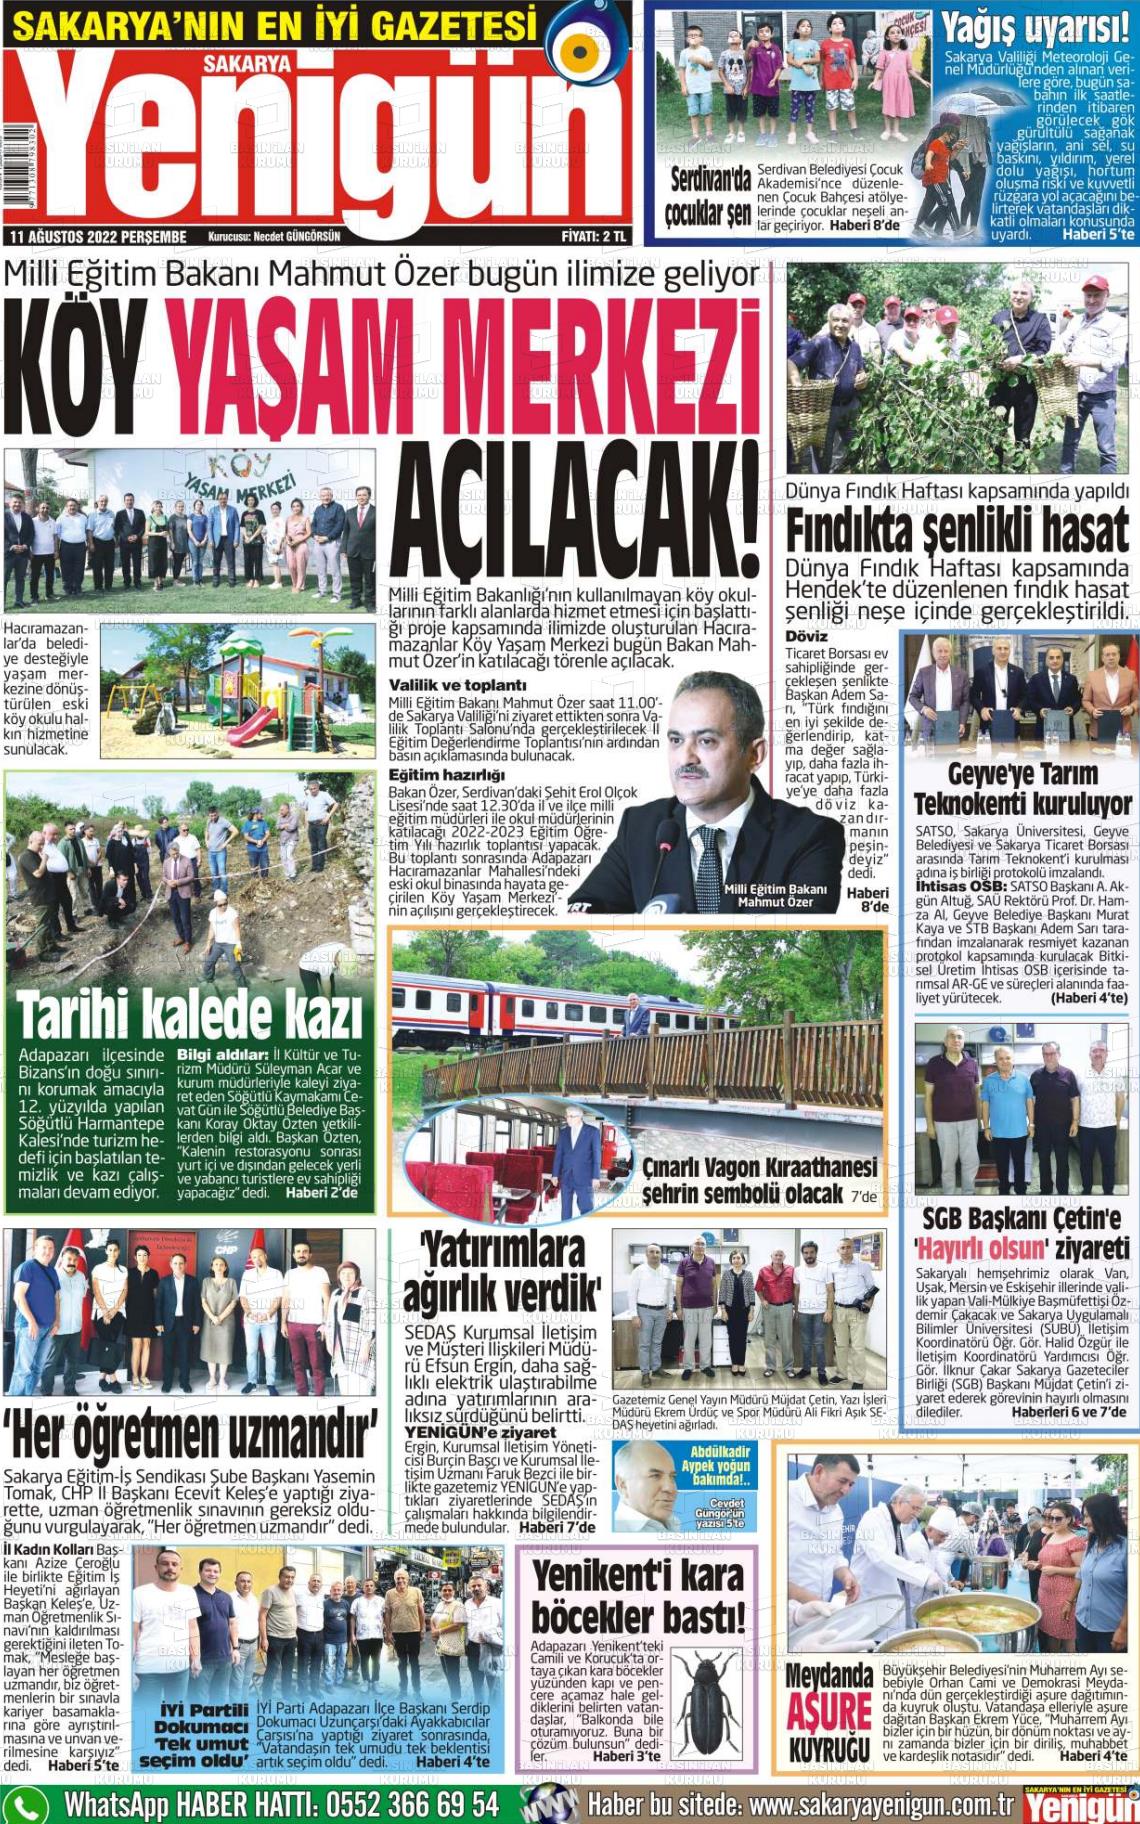 11 Ağustos 2022 Sakarya Yenigün Gazete Manşeti